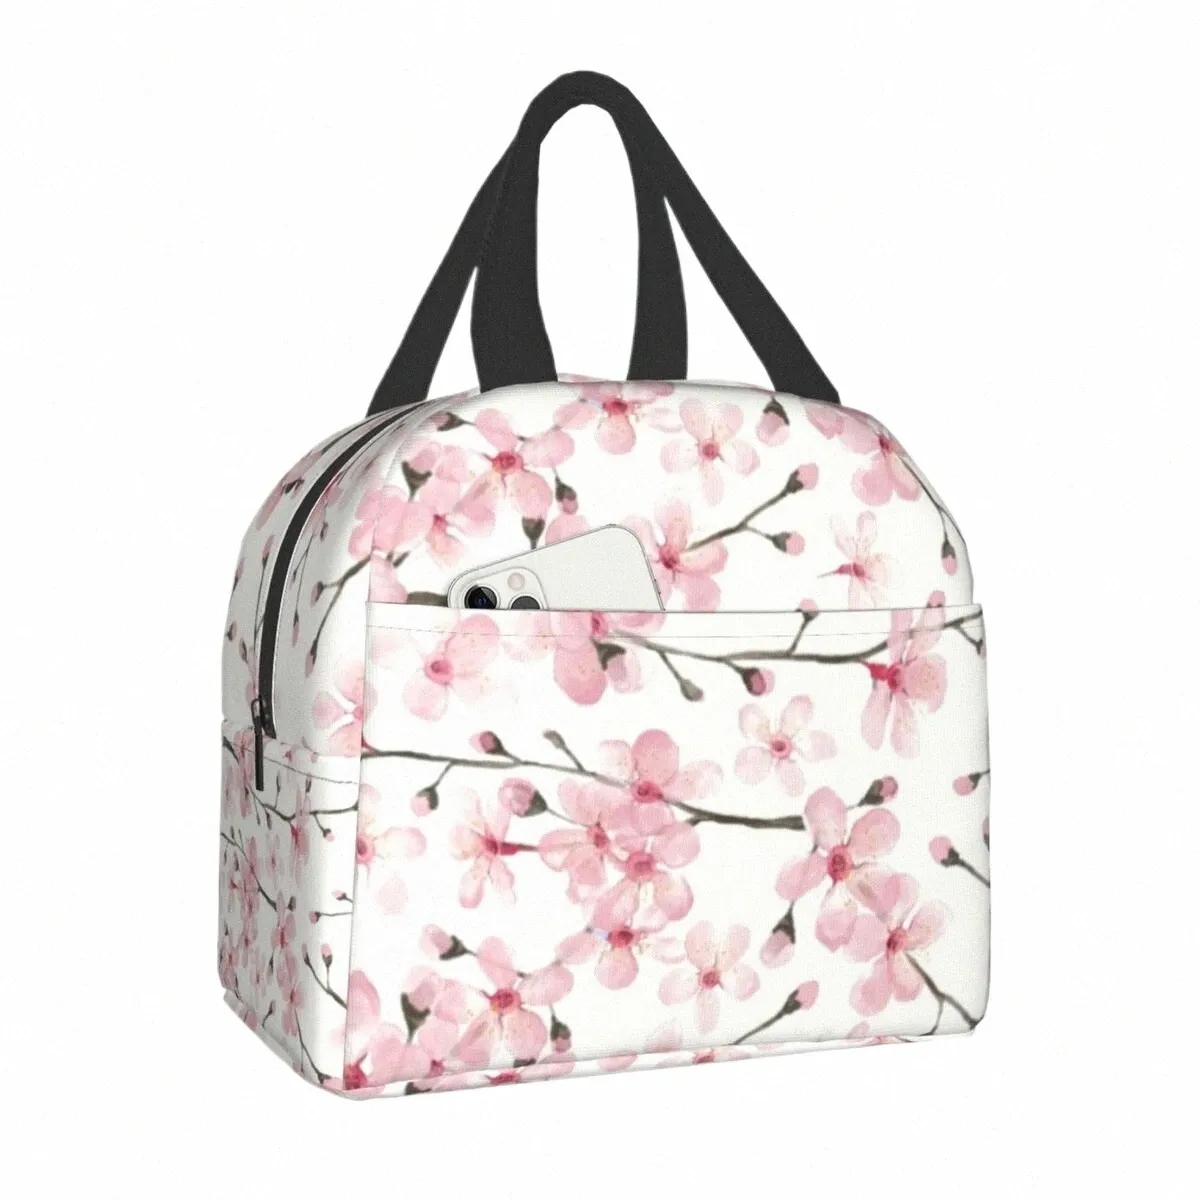 Borsa da pranzo isolata giapponese Cherry Blossom per le donne Floreale Fr Resuable Cooler Thermal Food Lunch Box Lavoro Scuola Viaggi y0mo #